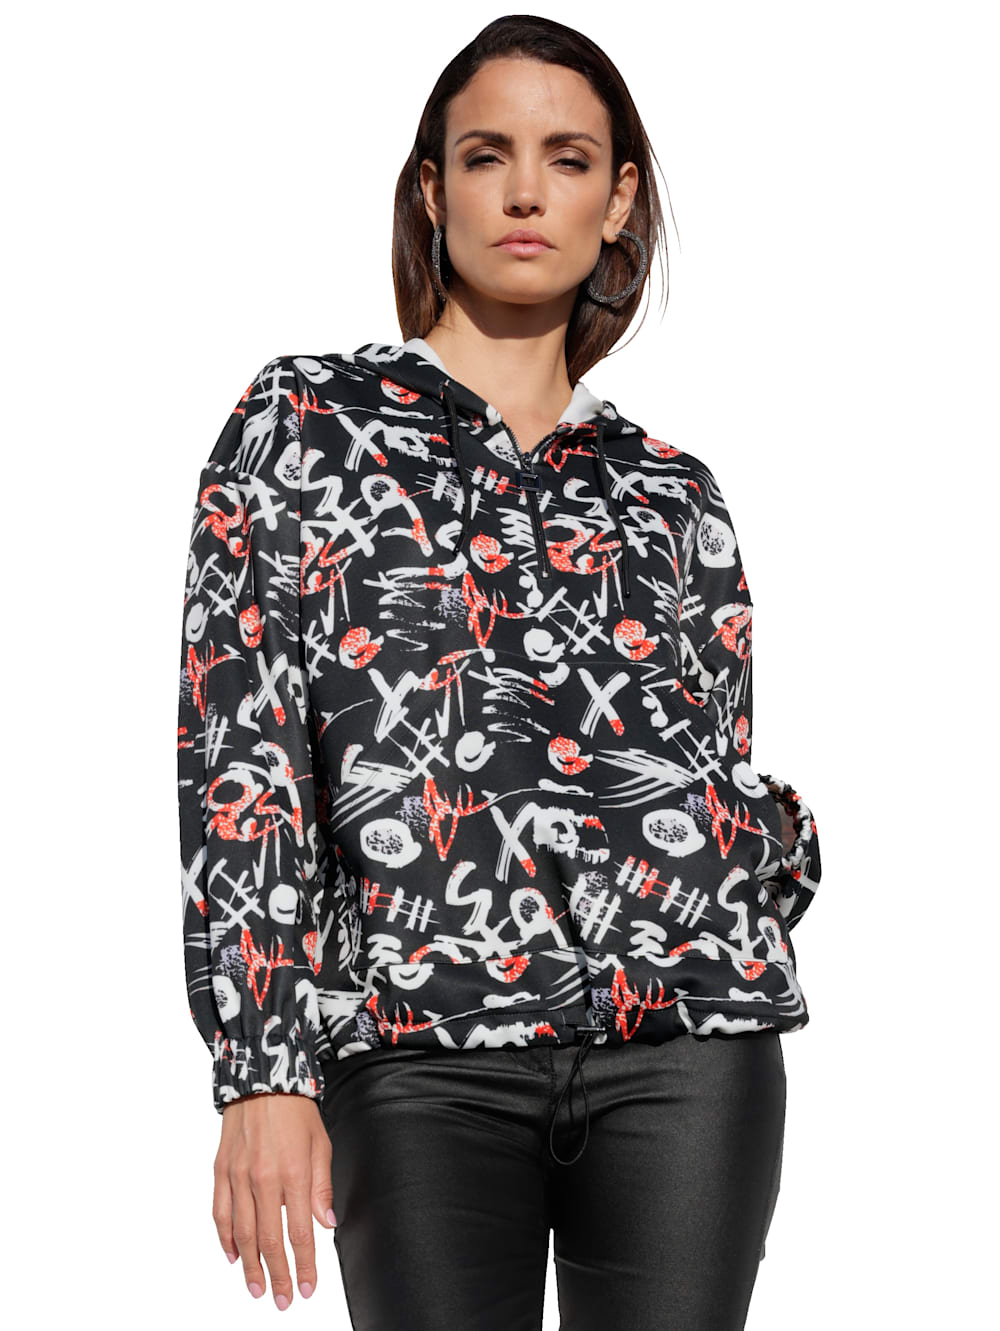 AMY VERMONT Sweatshirt mit effektvollem allover Print | Alba Moda